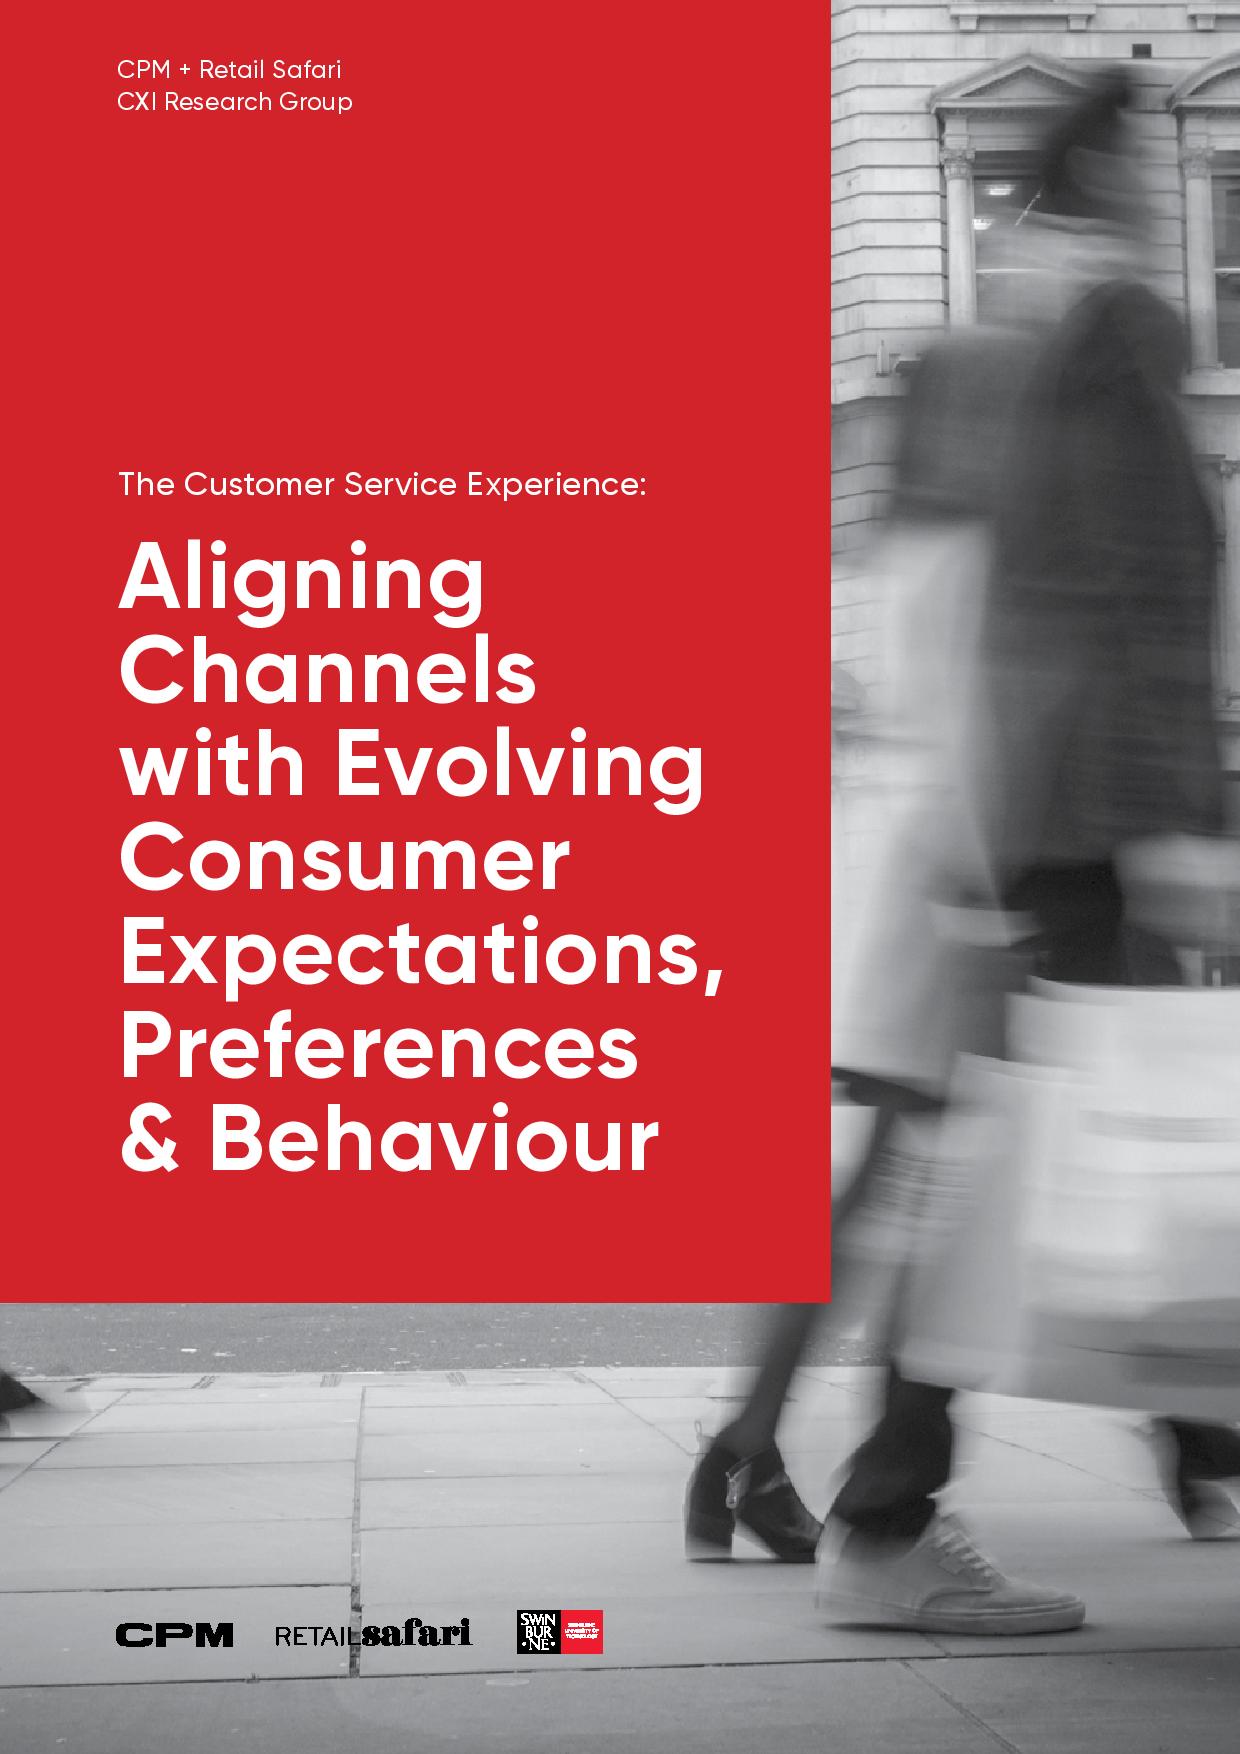 客户服务经验:调整渠道不断变化的消费者预期、偏好和行为